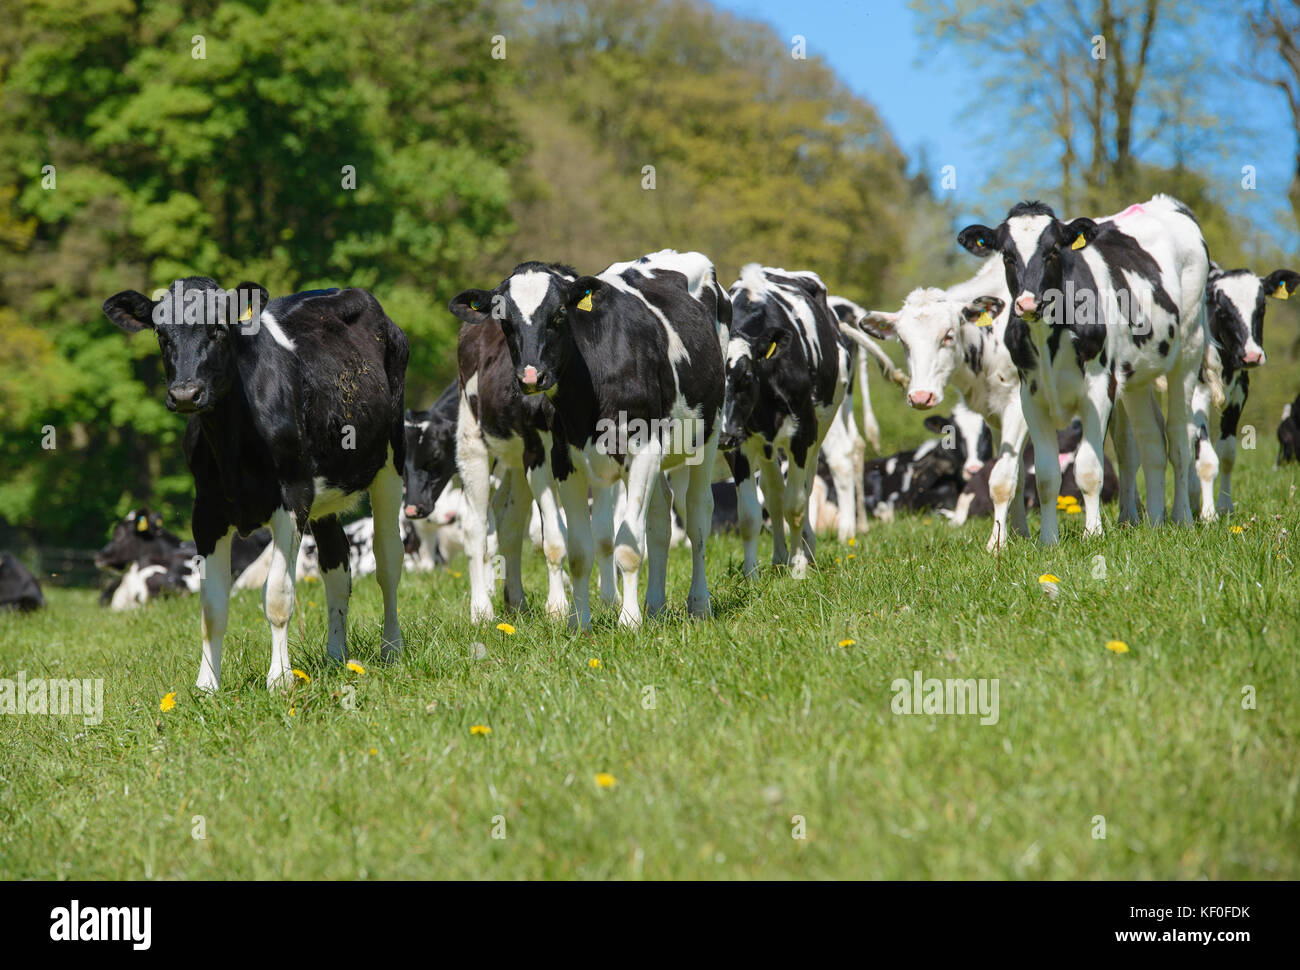 Holstein dairy heifer calves in grass field, Staffordshire. Stock Photo